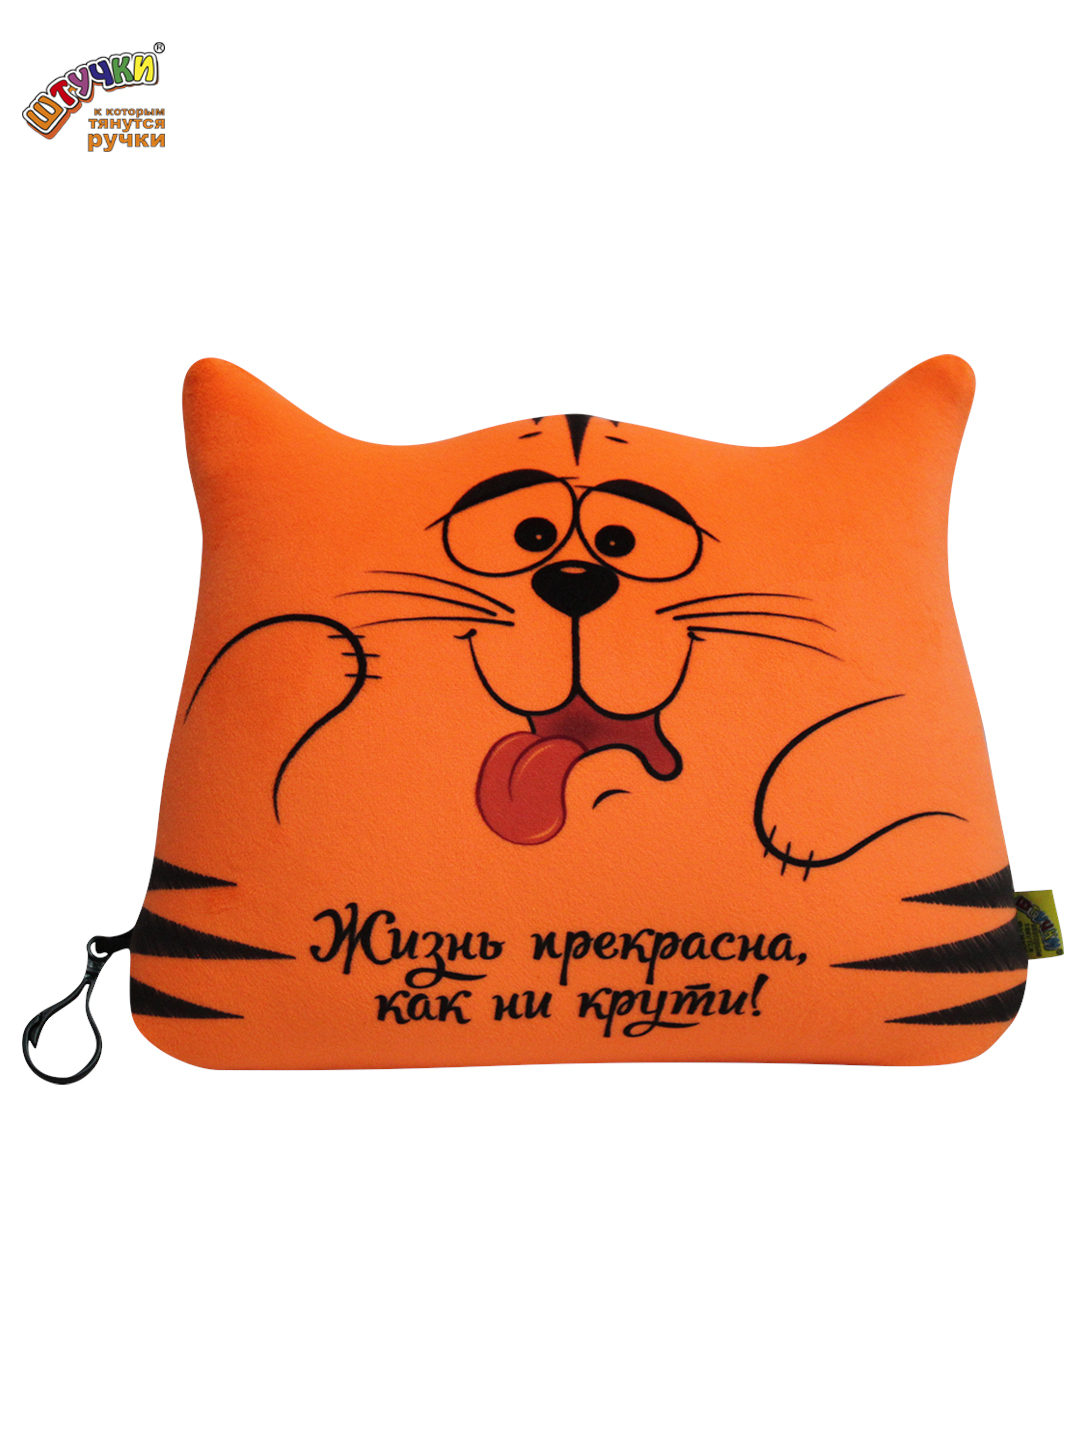 Подушка для шеи - антистресс Штучки, к которым тянутся ручки Трансформер Котик, оранжевый